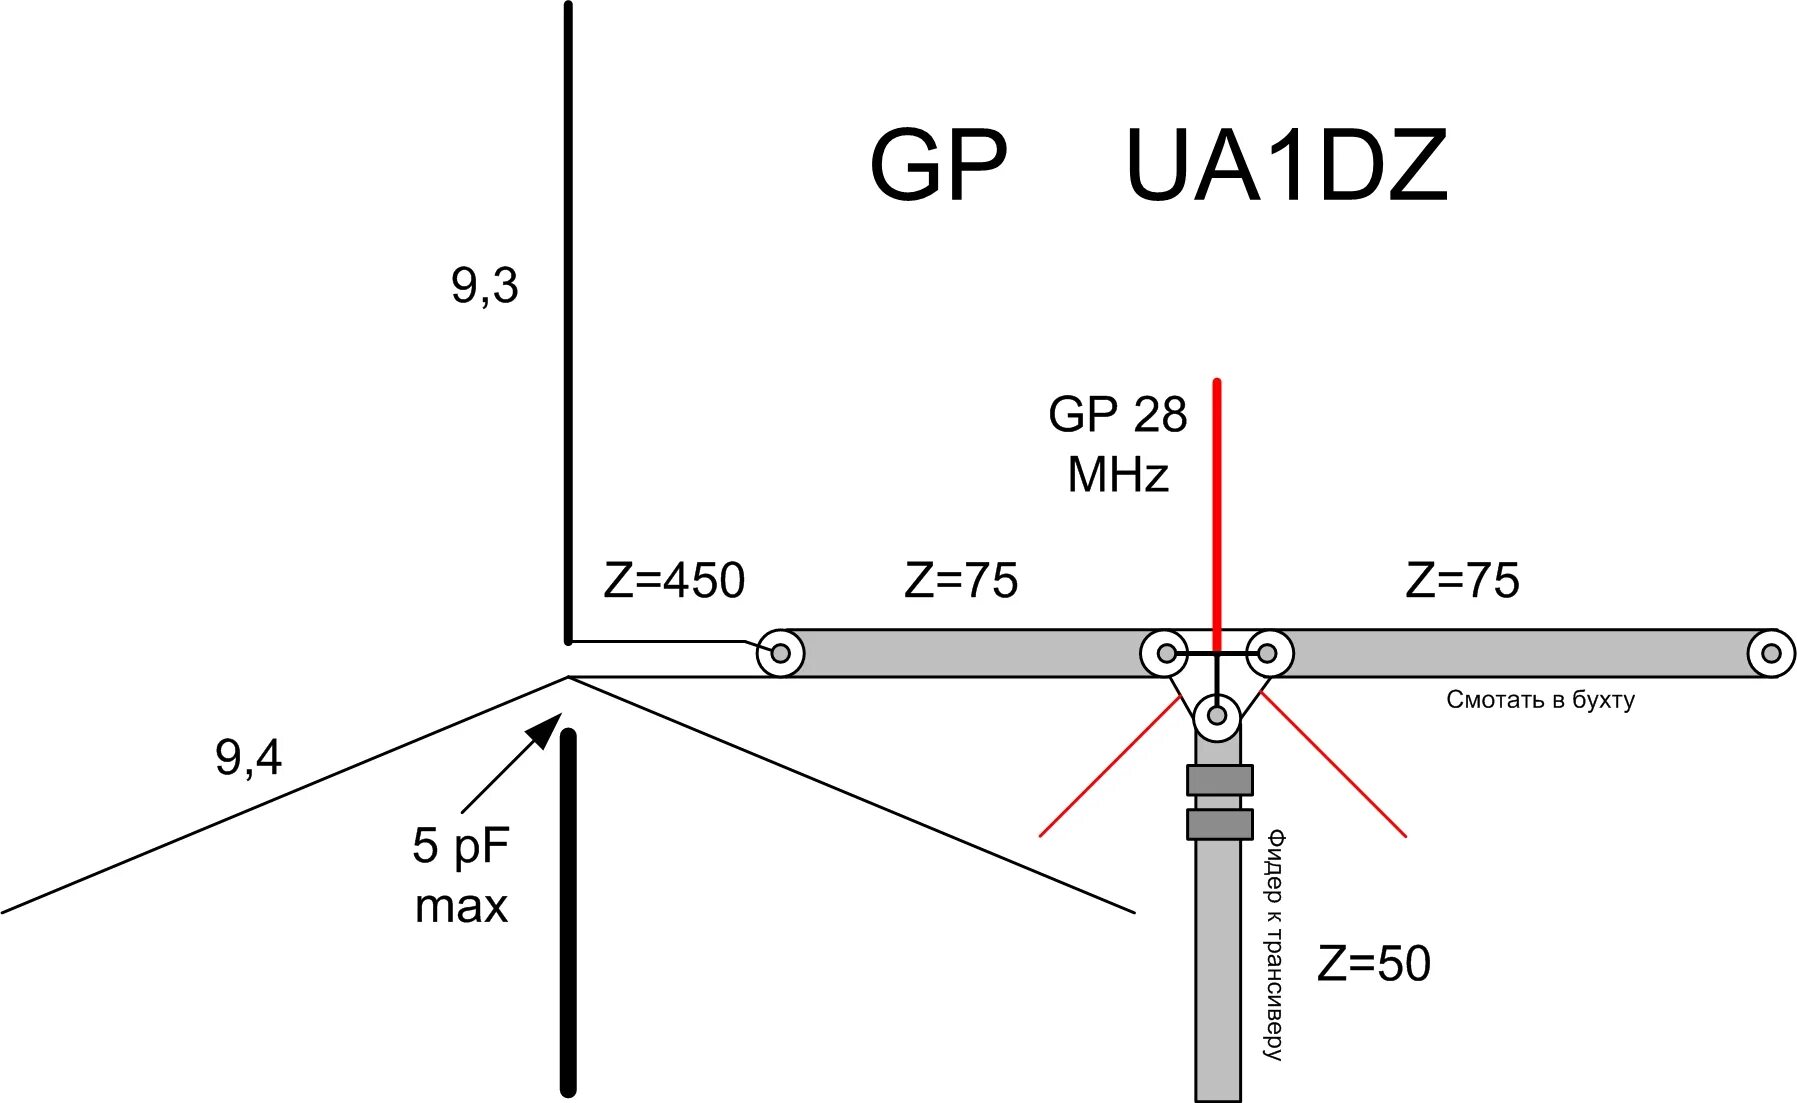 Dz 1 z 2. Антенна ua1dz вертикал. Антенна ua1dz на 40 20 15 и 10 метров. Кв антенна штырь вертикал 40-20-15 метров. Антенна ua1dz 9.3 метра.